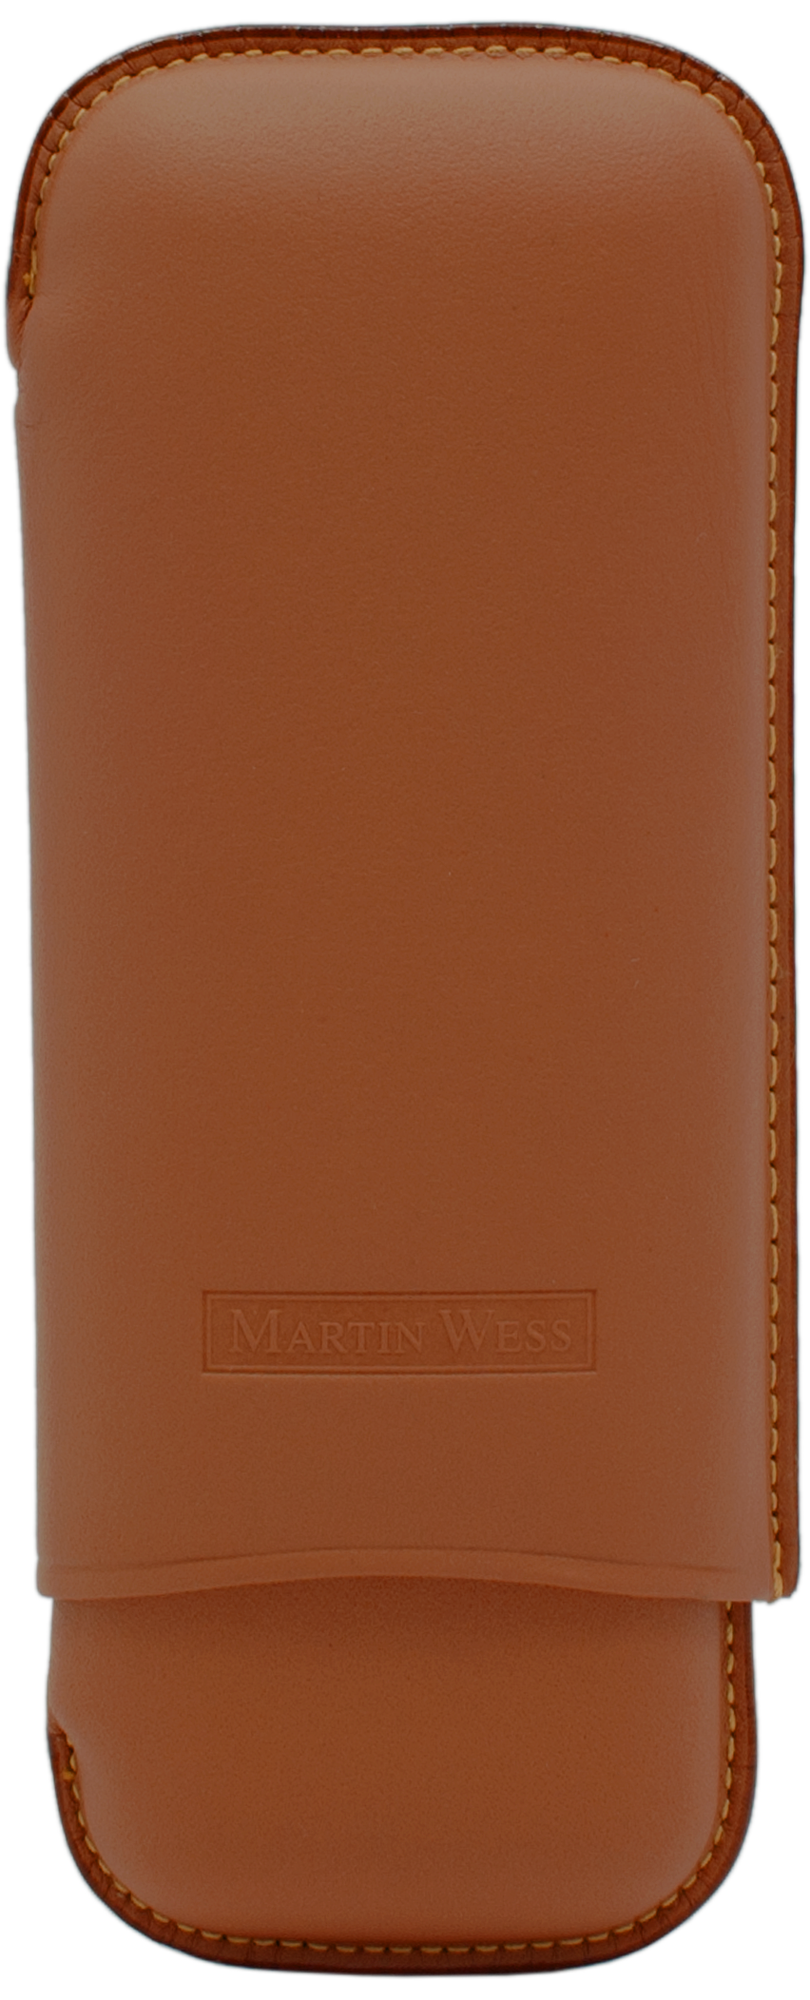 Martin Wess 590 Smooth Natural - 2 Robustos